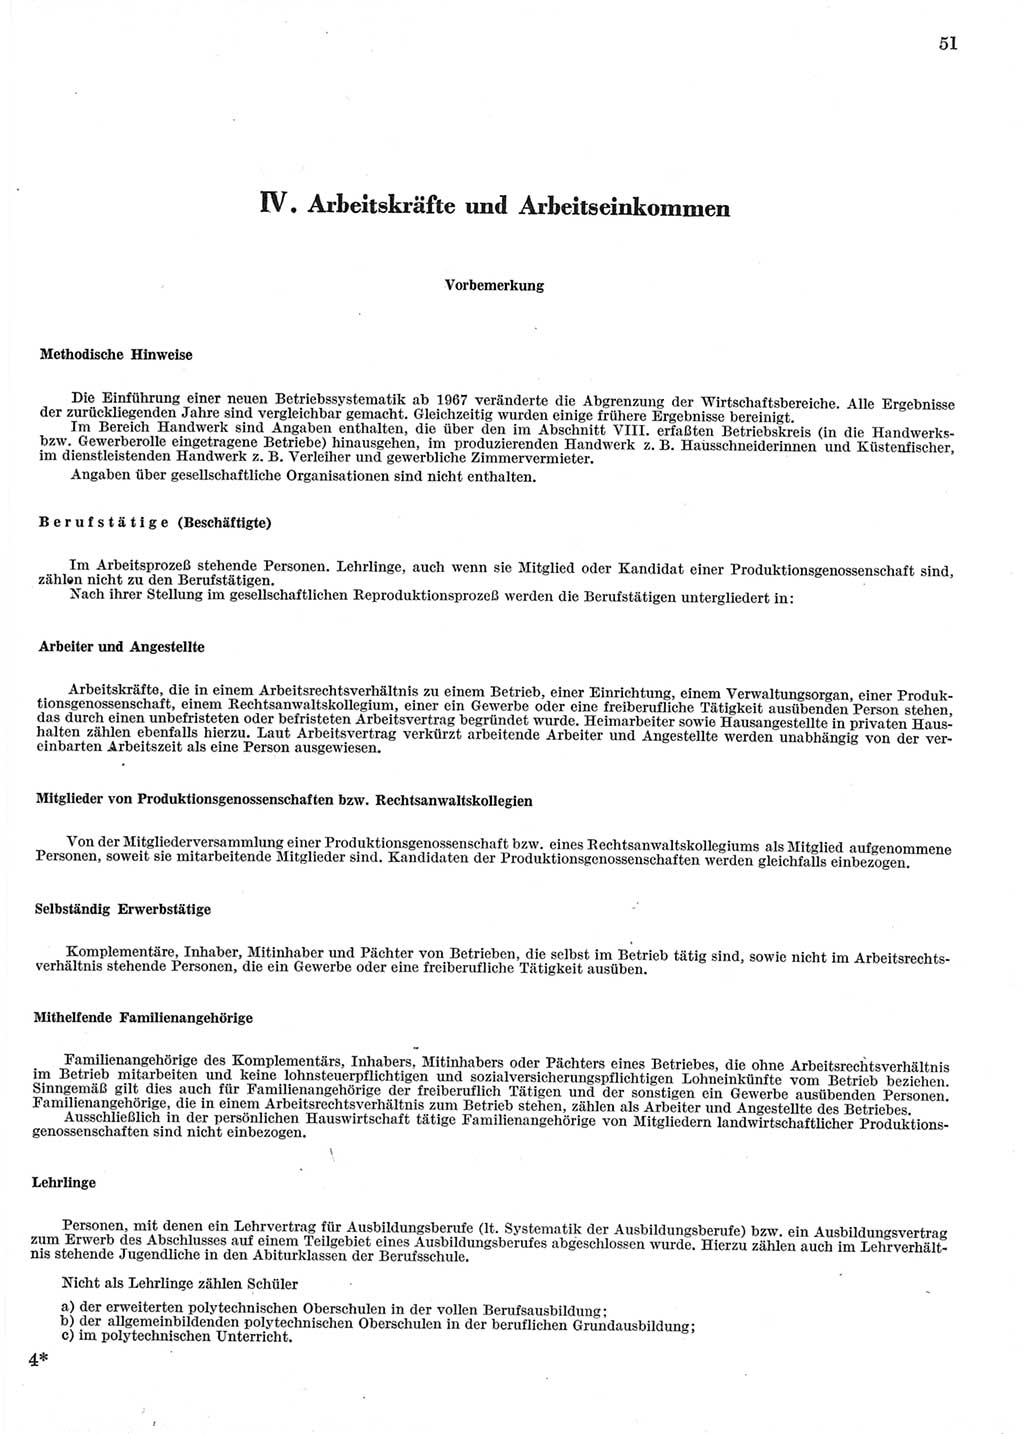 Statistisches Jahrbuch der Deutschen Demokratischen Republik (DDR) 1973, Seite 51 (Stat. Jb. DDR 1973, S. 51)